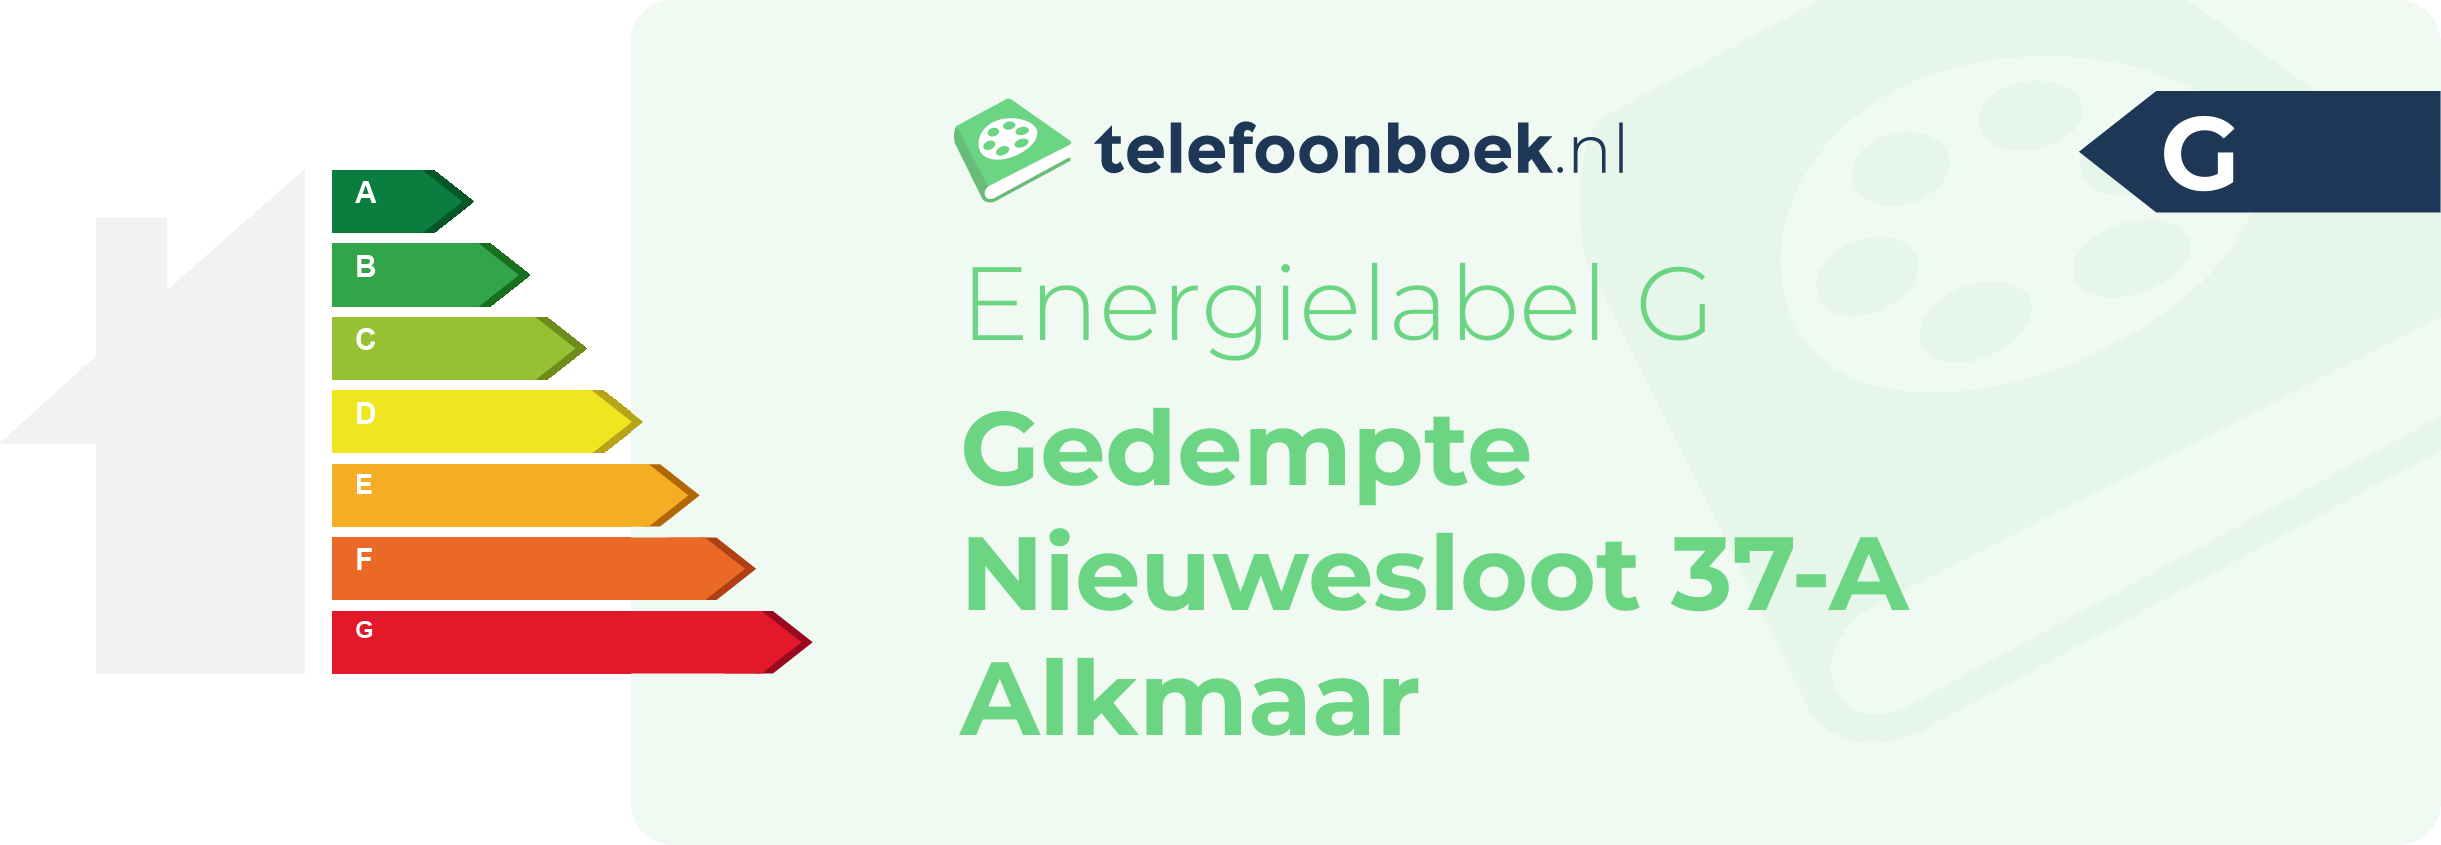 Energielabel Gedempte Nieuwesloot 37-A Alkmaar